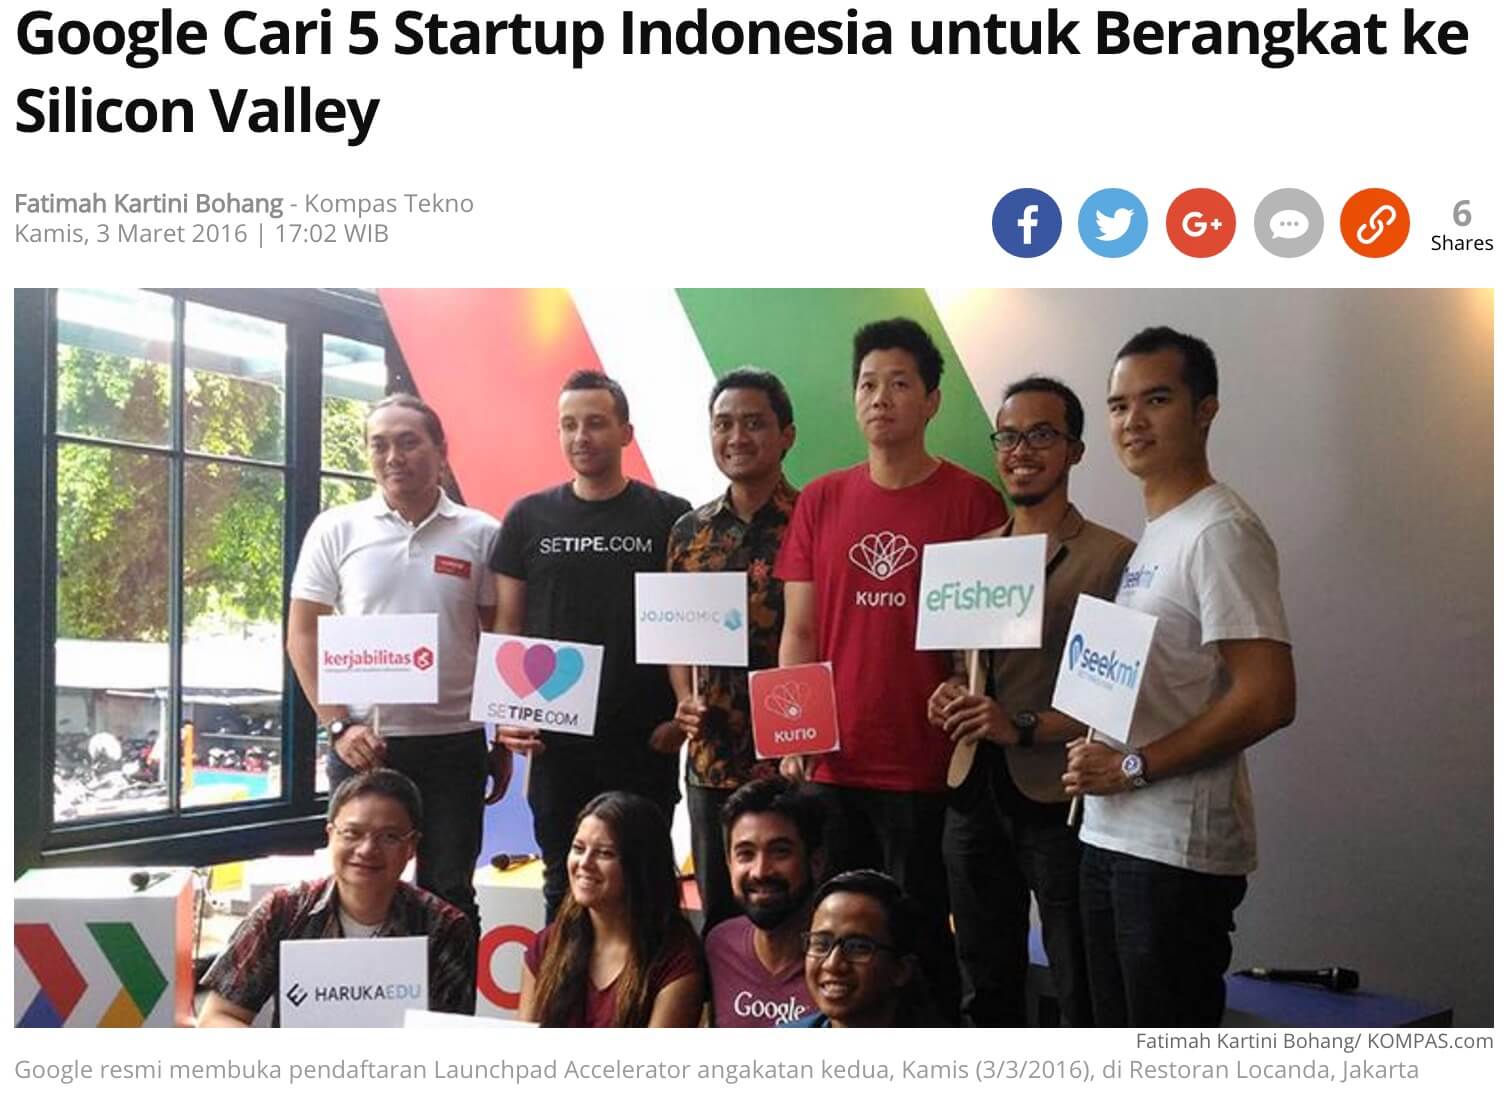 インドネシアのスタートアップ企業 Kompas グーグル